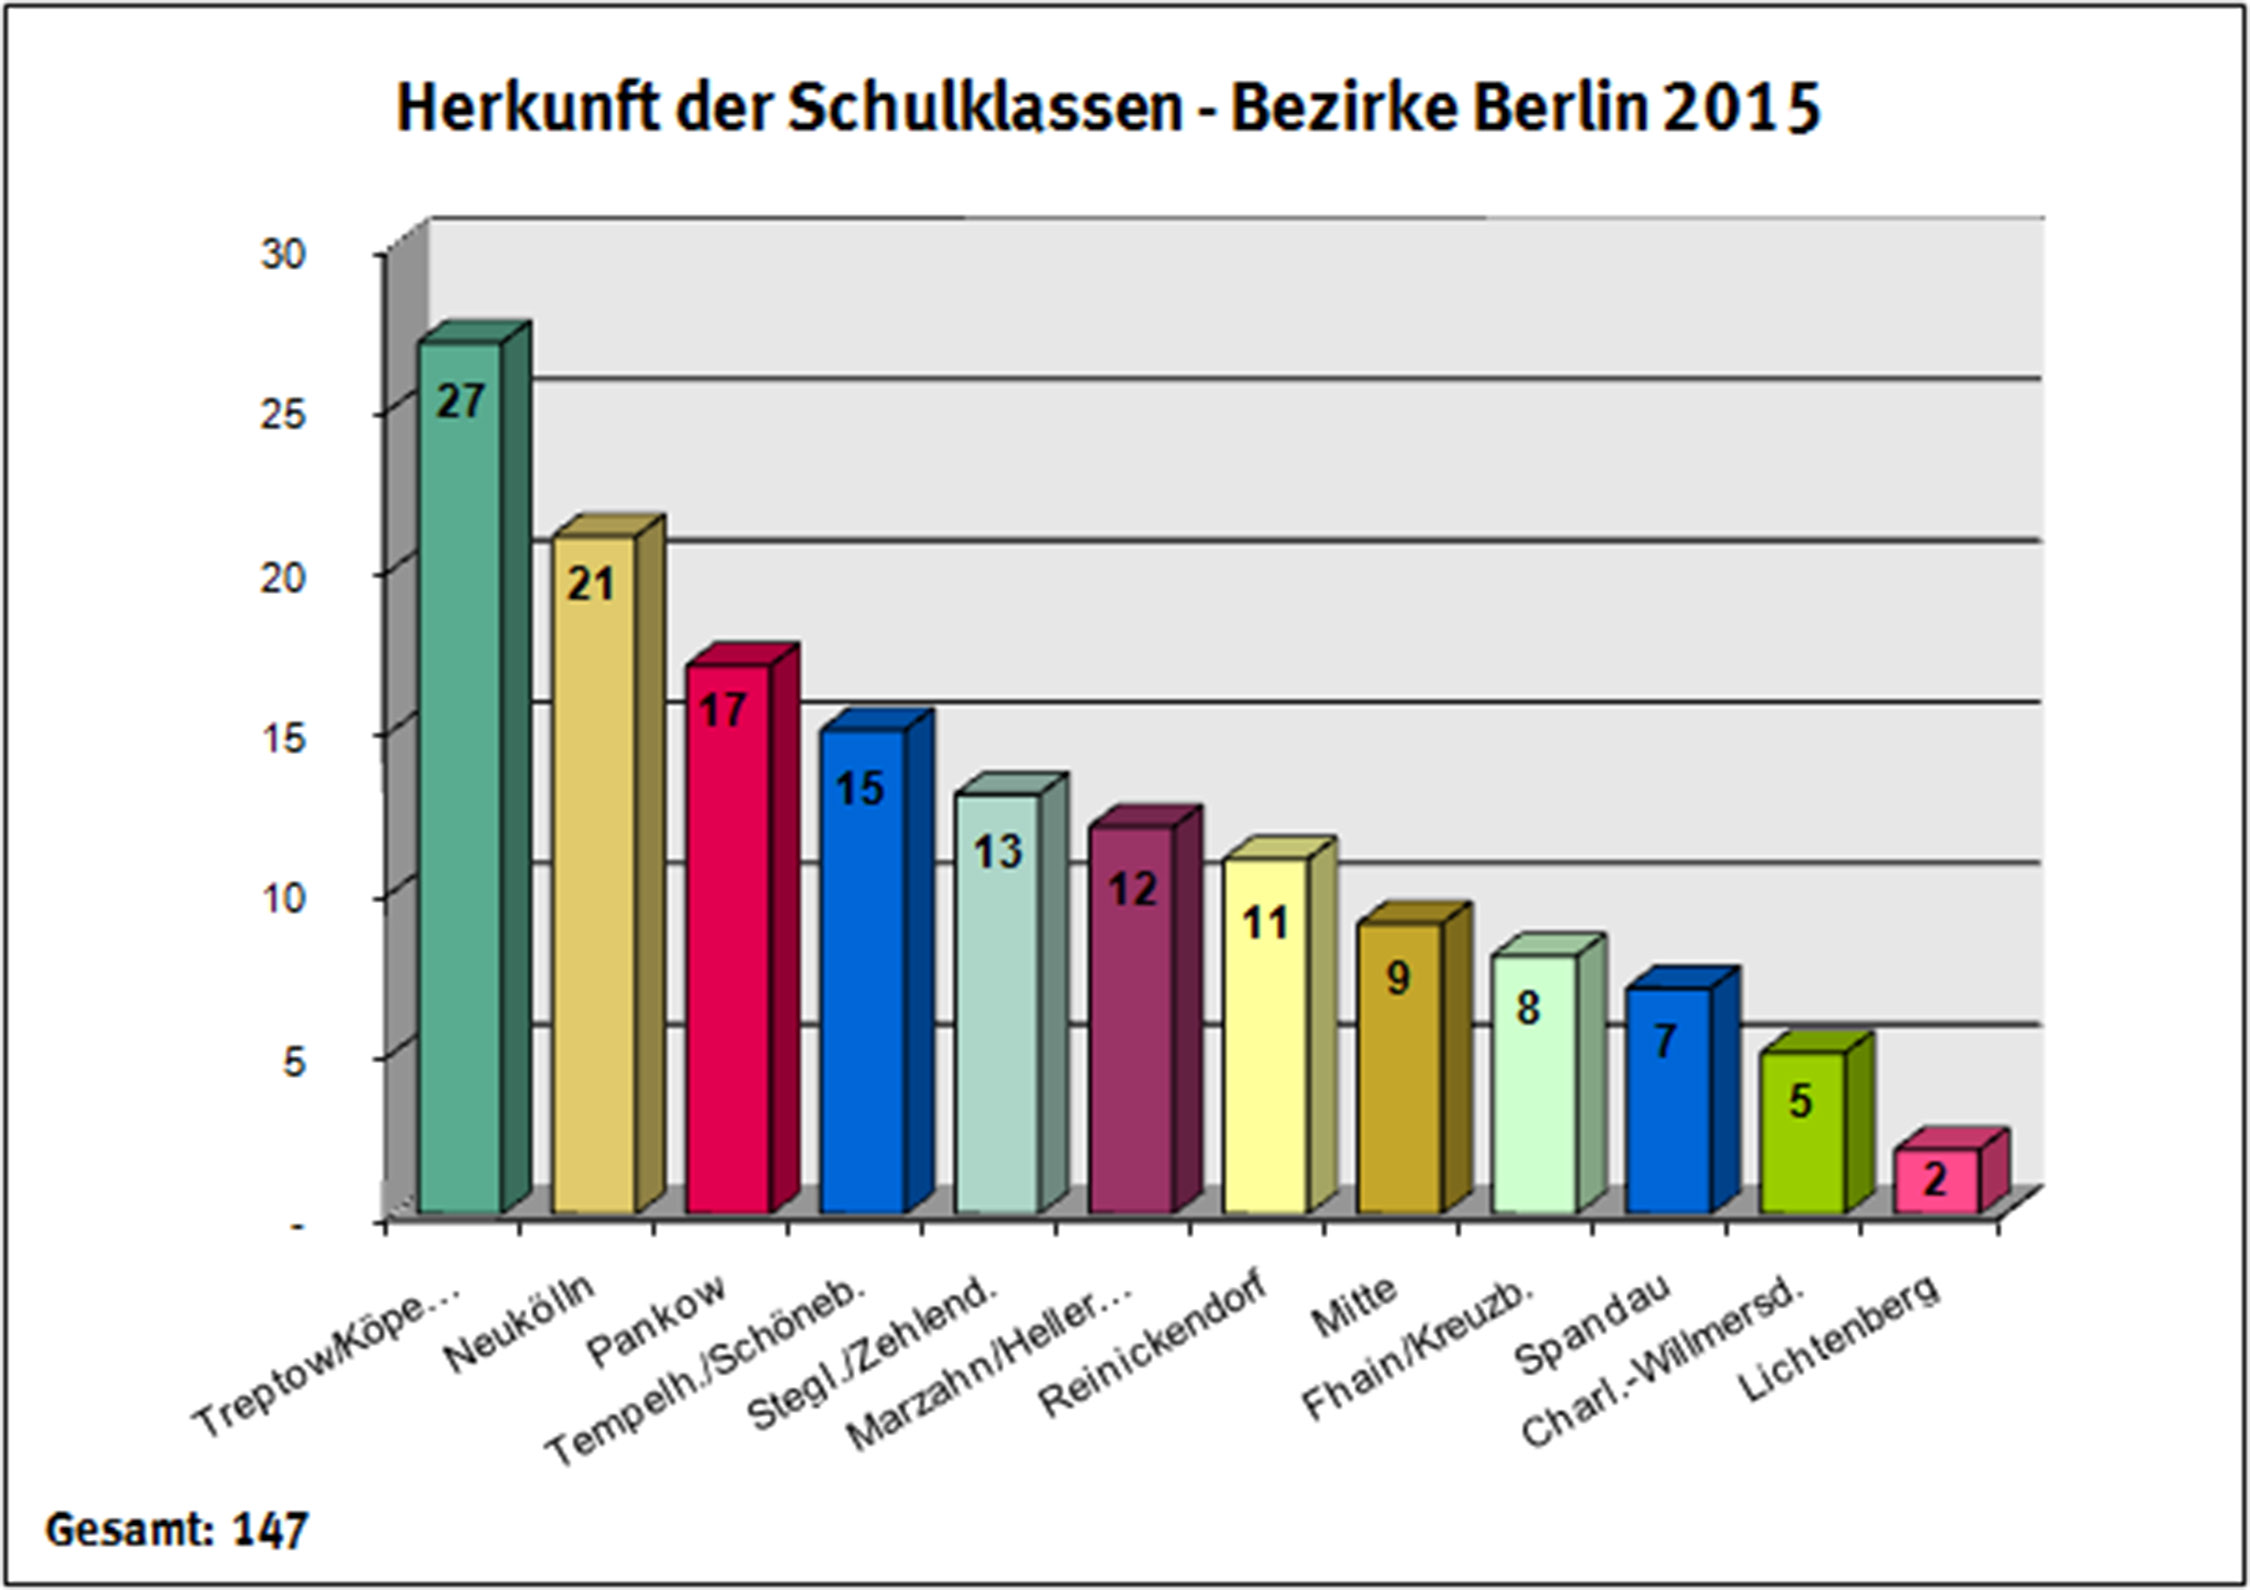 Schulklassen aus Berlin machten mit 42,6% auch 2015 wieder den größten Anteil der betreuten Schulgruppen aus Deutschland aus. Wobei der Anteil im Vergleich zum Vorjahr um 9,5% zurückgegangen ist.